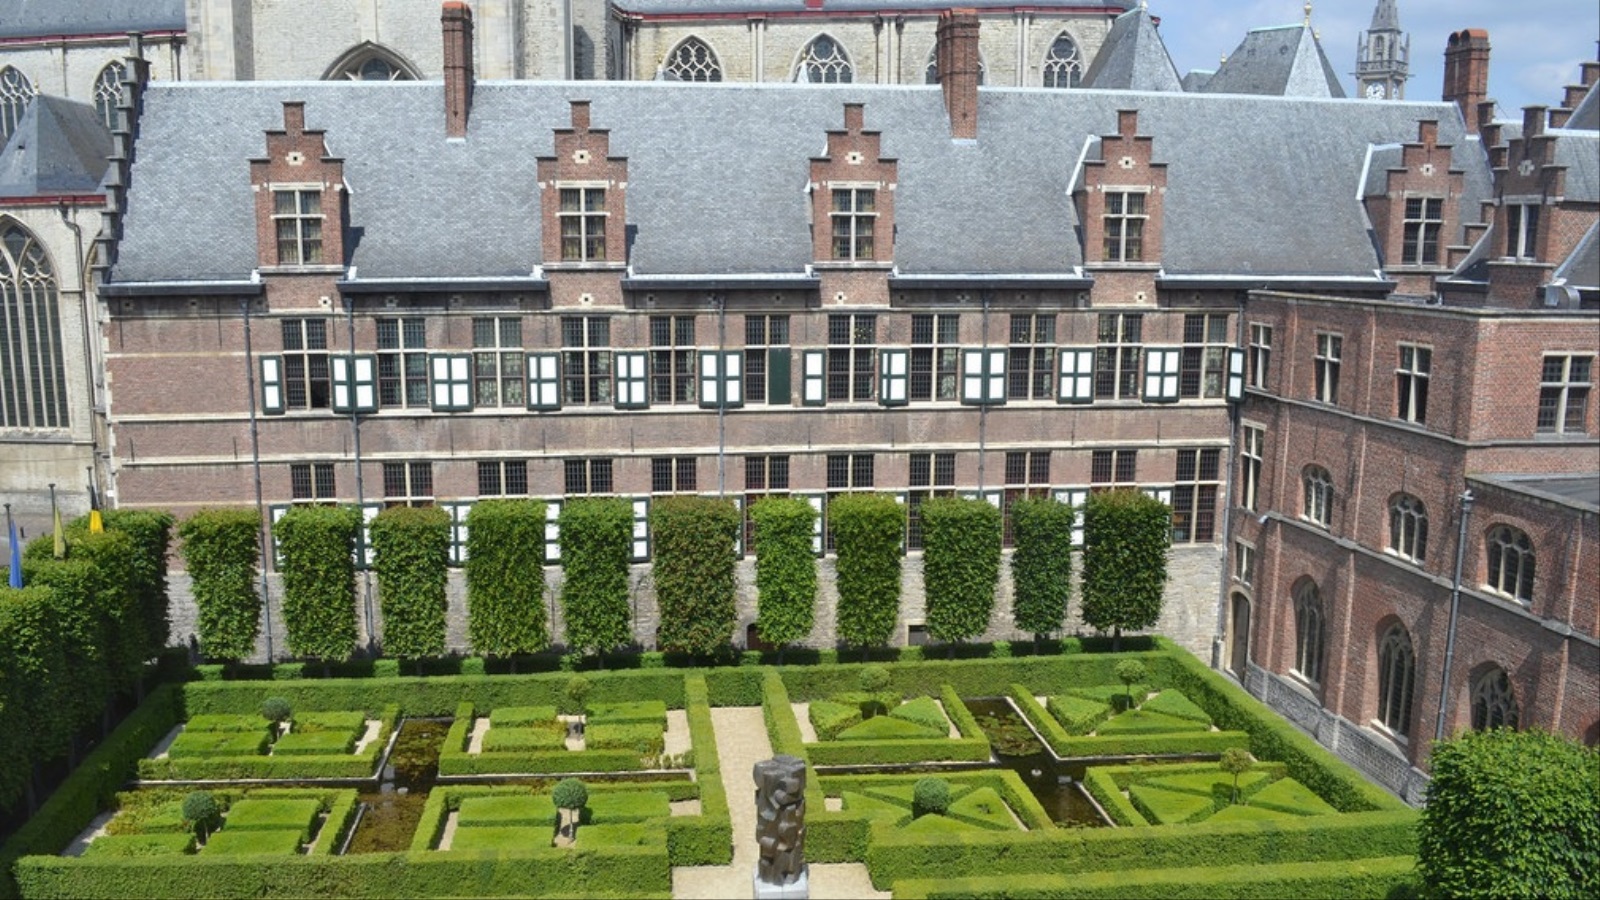 تعتبر جامعة خنت أول جامعة بلجيكية ناطقة بالهولندية. تأسست سنة 1817 وتضم أكثر من 41 ألف طالب.